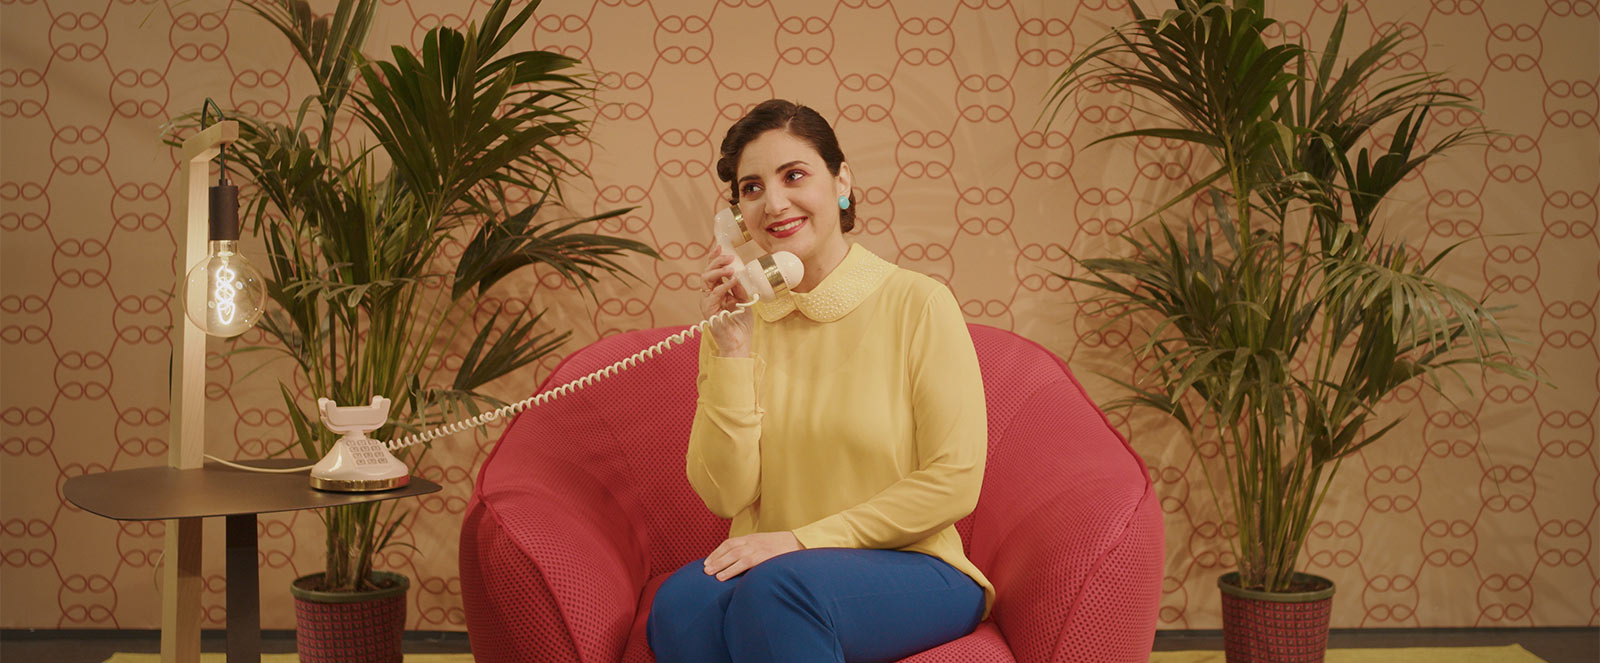 Donna che risponde a un telefono vintage nel video The Ego Calling